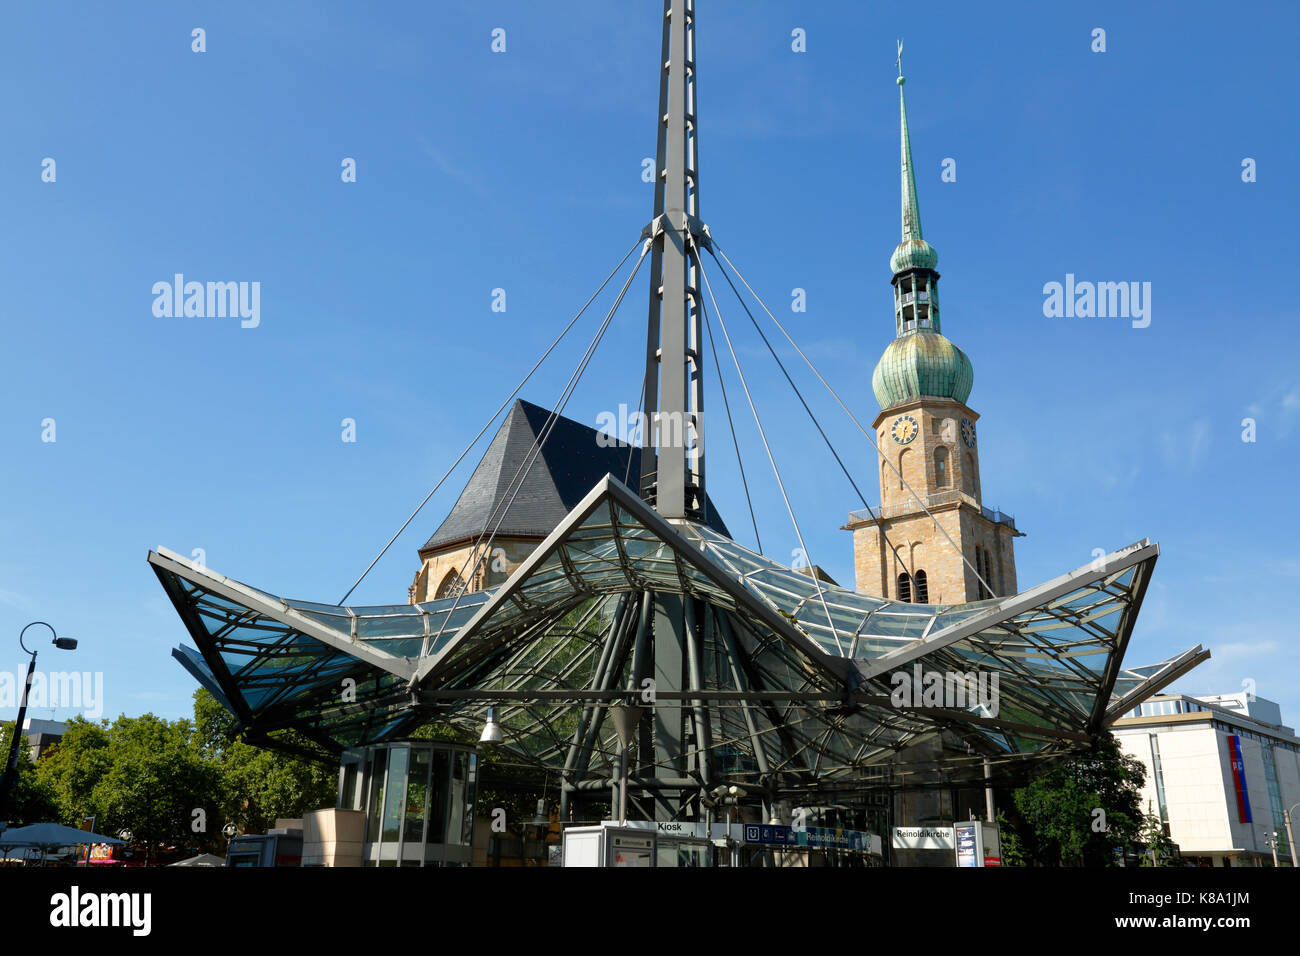 Willy-Brandt-Platz mit Pylon der U-Bahn-Station und Kirche St. Reinoldi in Dortmund, Ruhrgebiet, Nordrhein-Westfalen Stock Photo